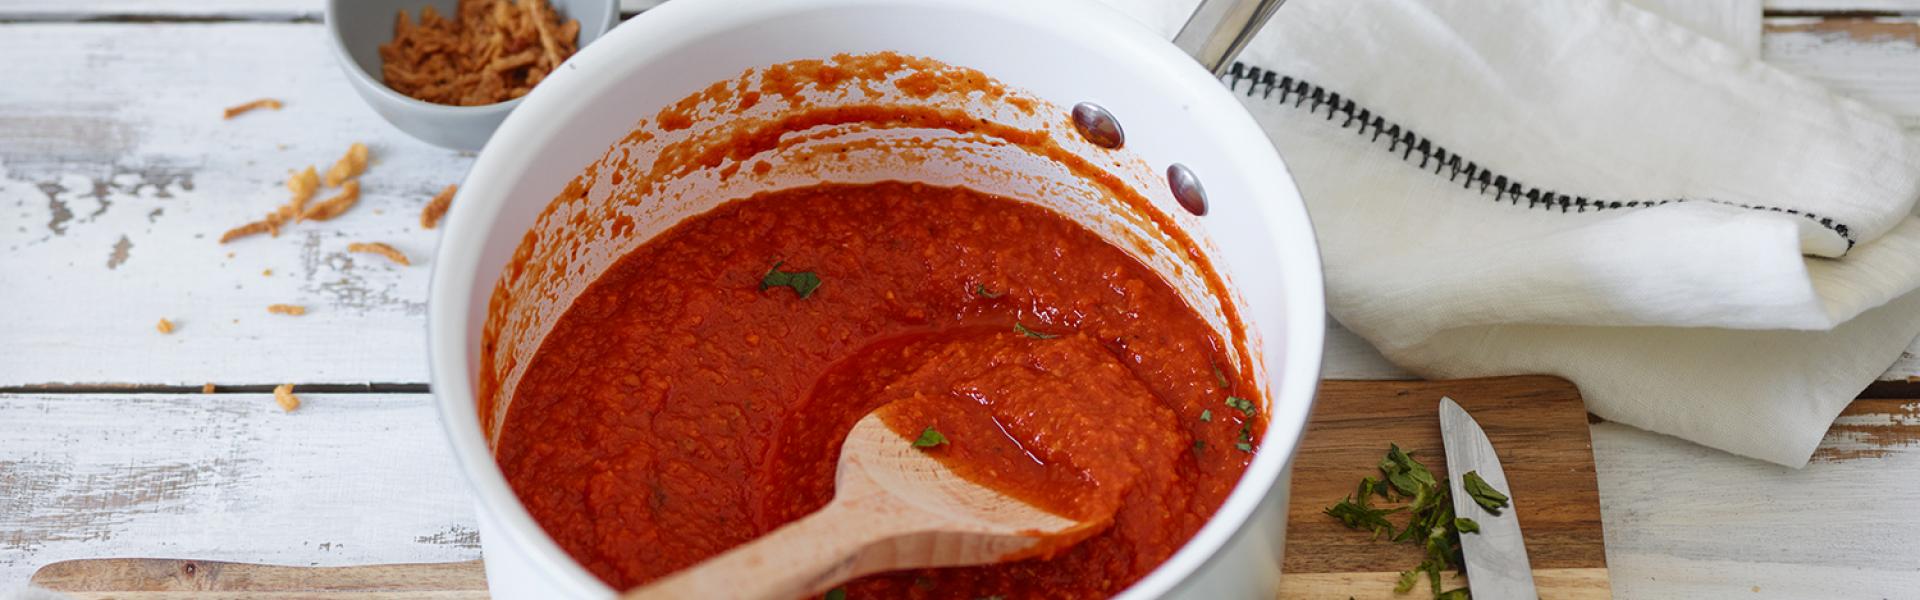 Schnelle Tomatensoße einfach selber machen | Simply Yummy